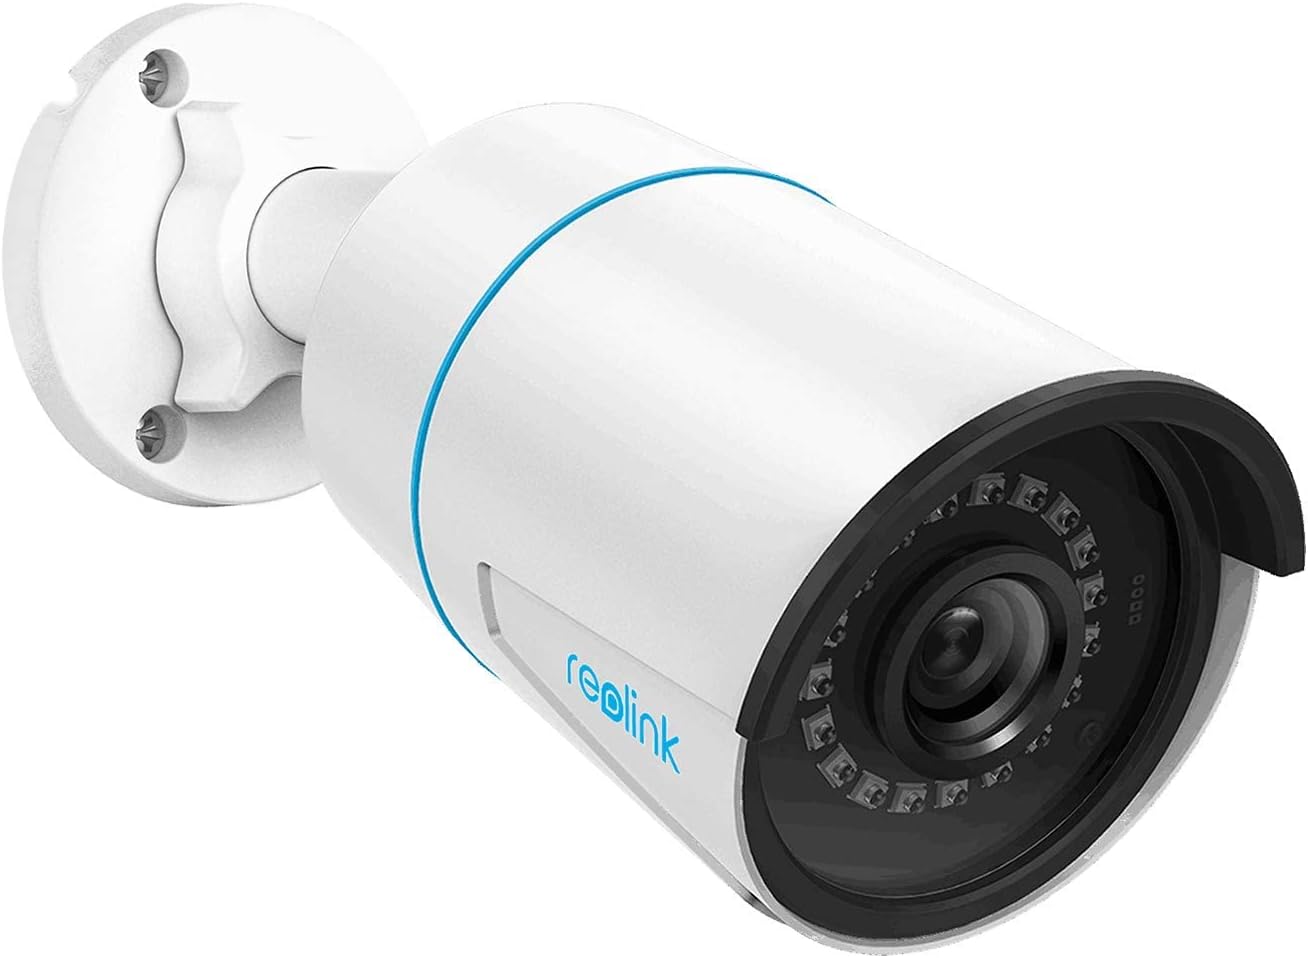 Reolink RLC-810A / RLC-820A / RLC-510A  IP66 Kamera 5MP / 8MP Infrarot Nachtsicht PoE Sicherheitskamera Smart Home Video Überwachungskamera